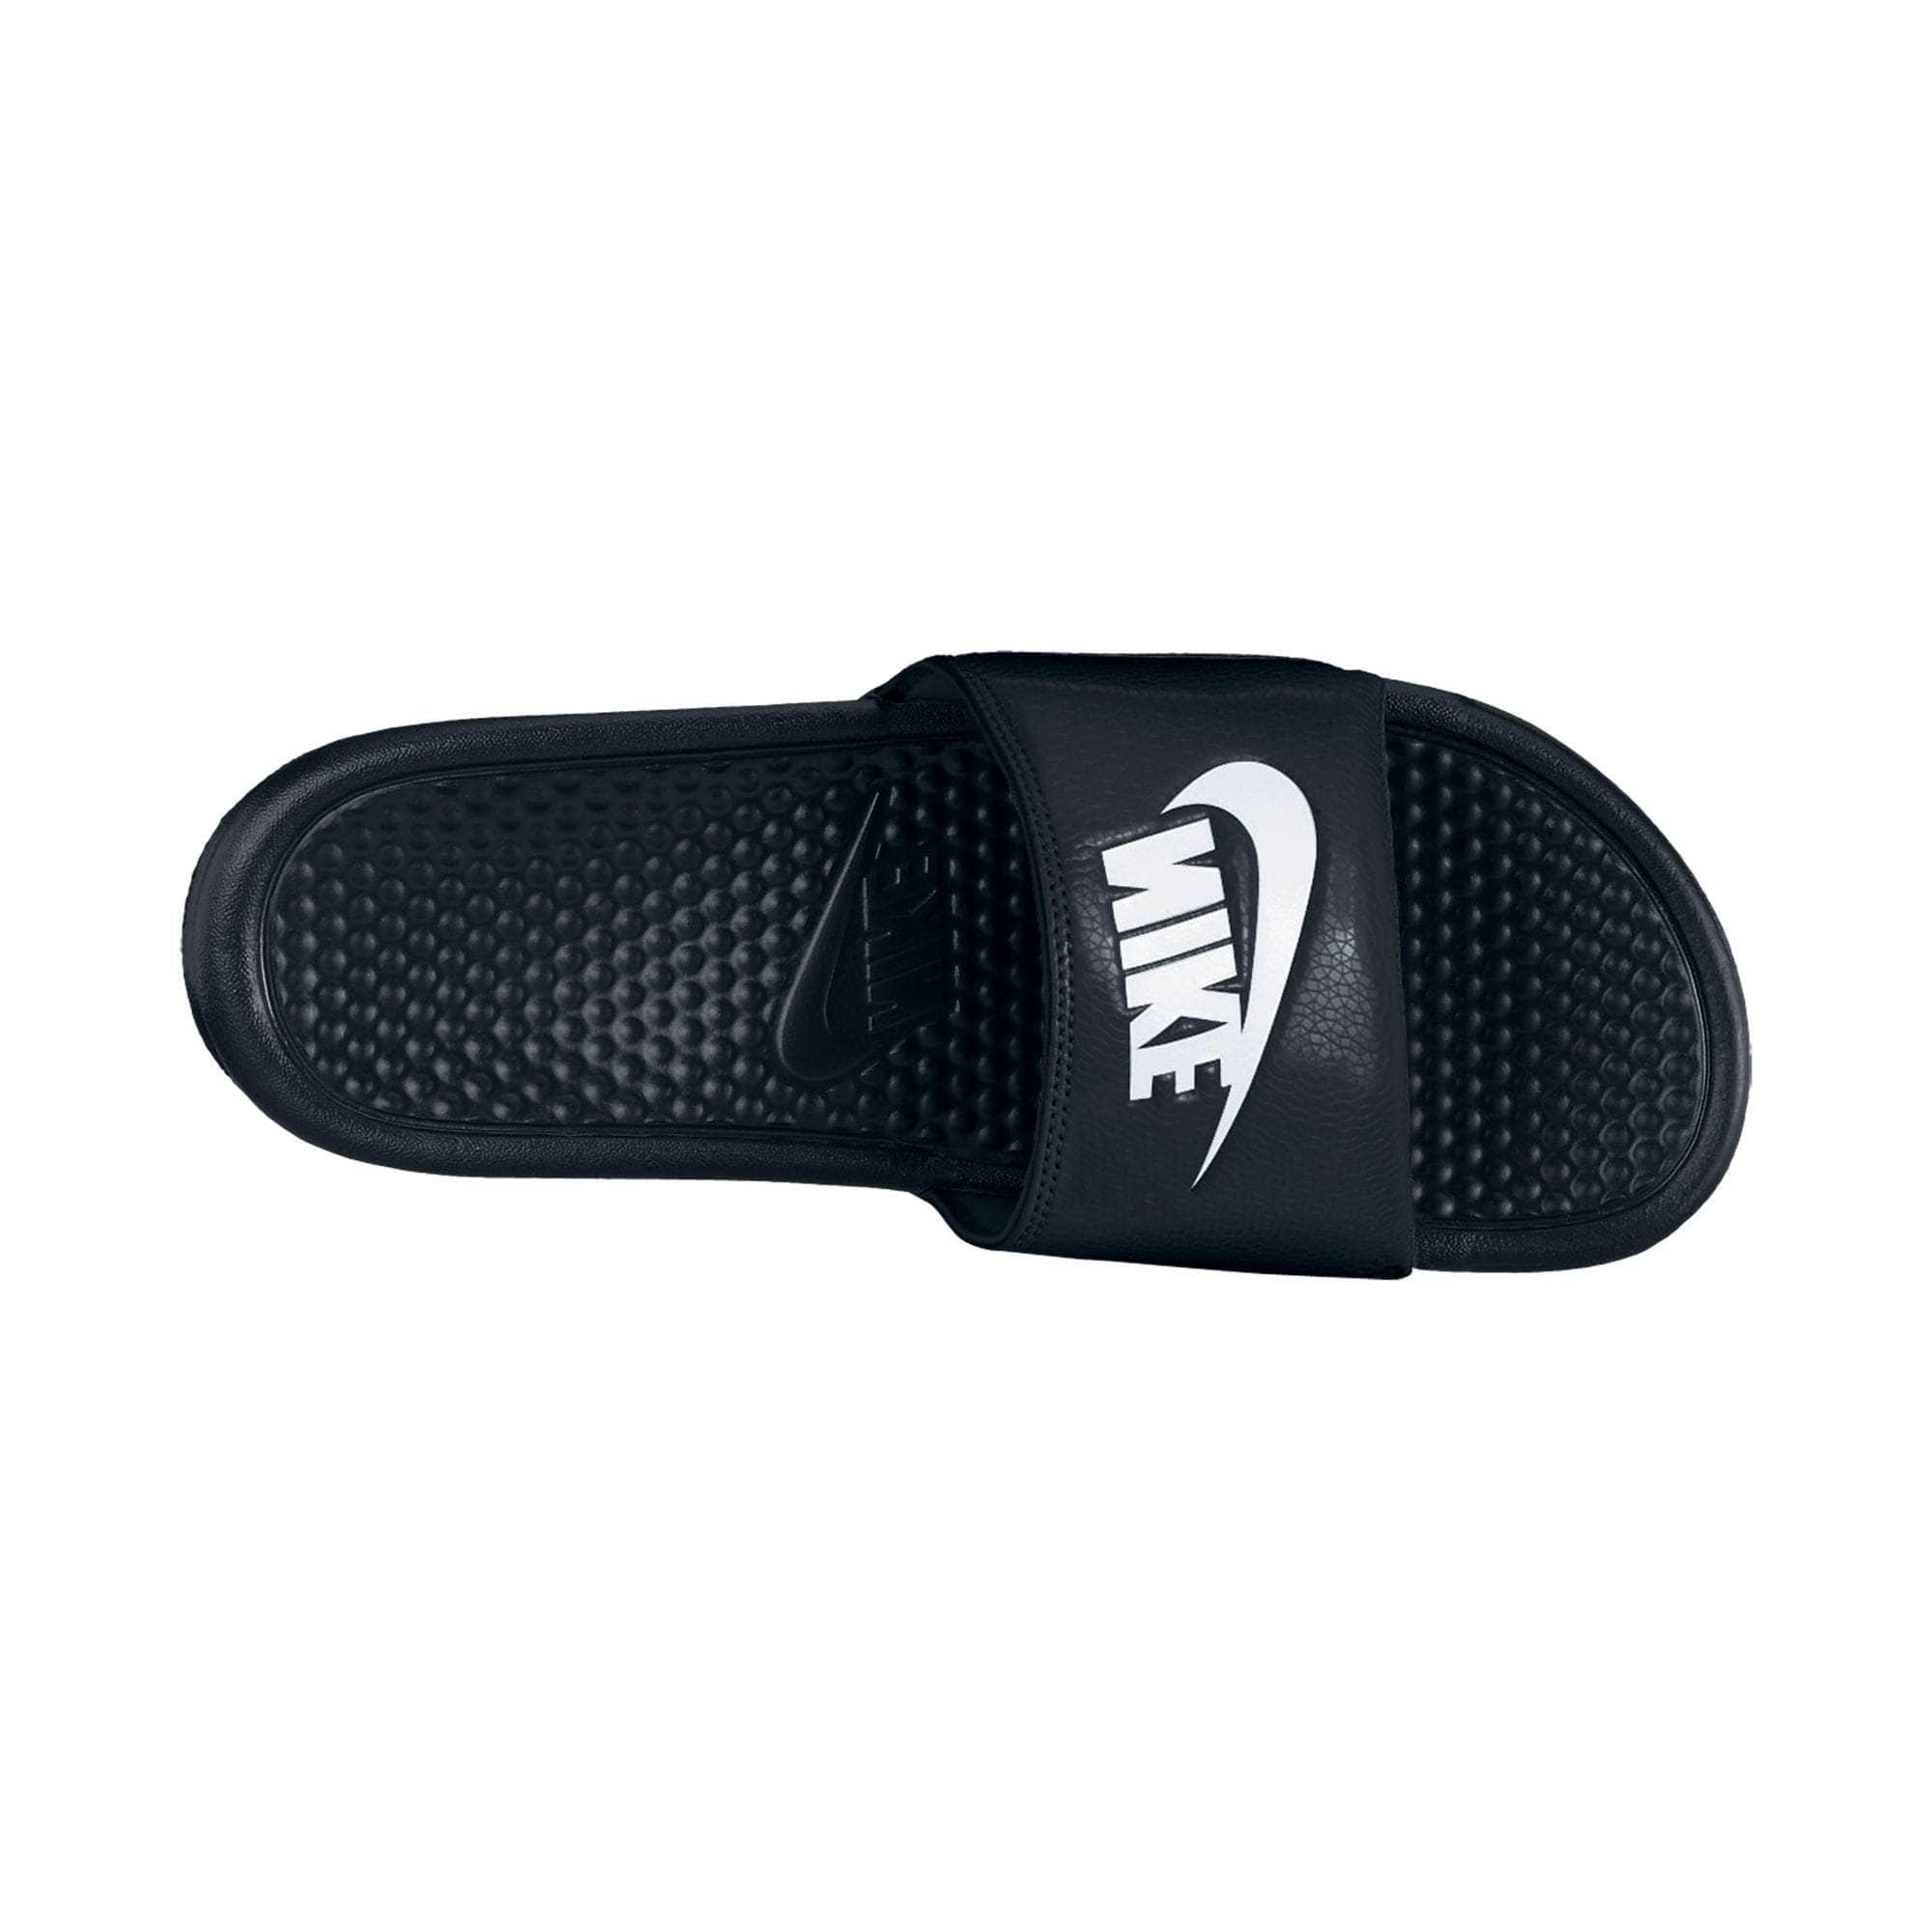 NIKE FOOTWEAR Nike Benassi JDI  Slides - Men's